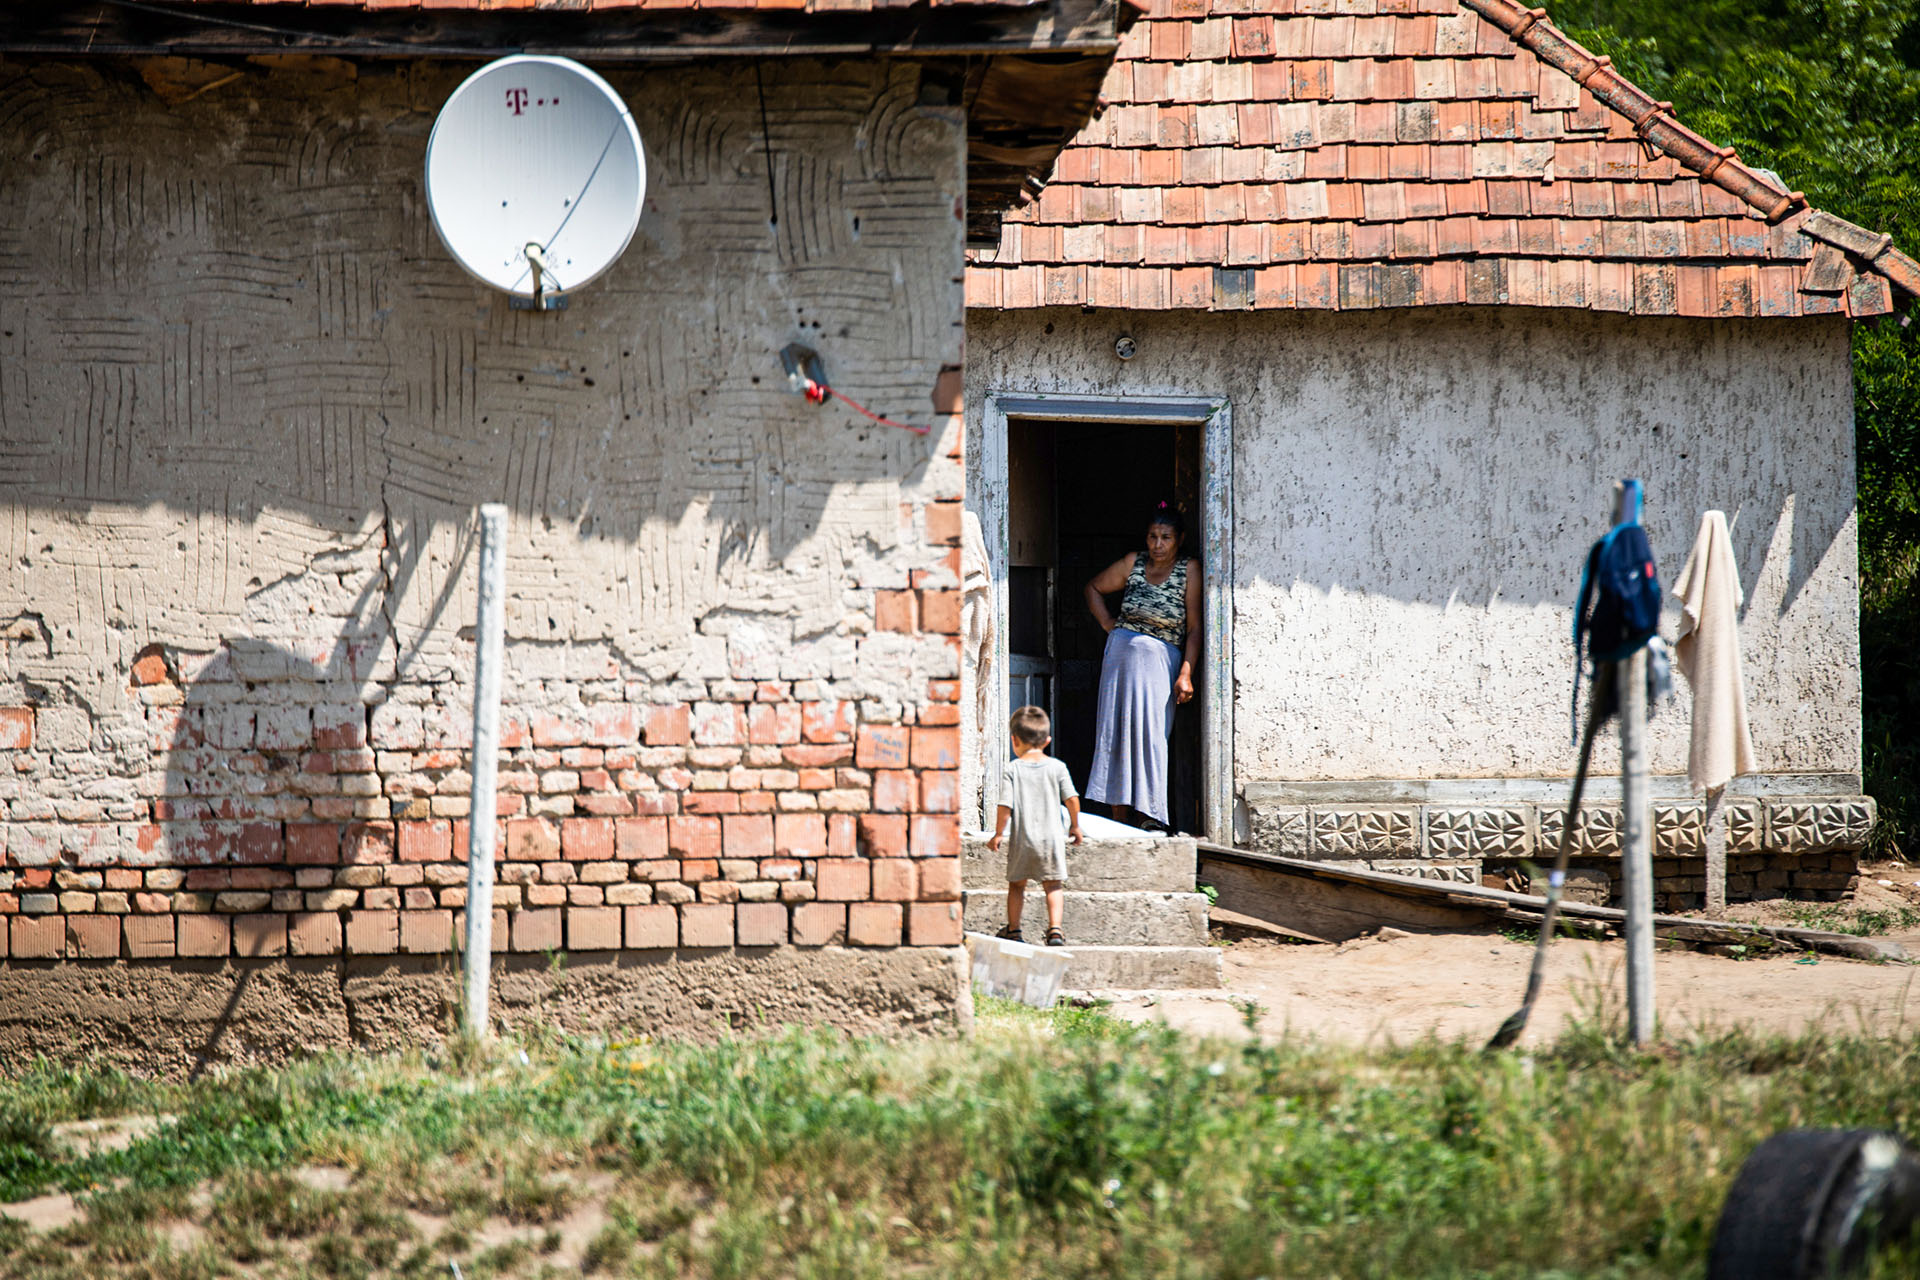 Segítséget kértek a roma közösségek a járvány miatt, eddig azonban mindhiába